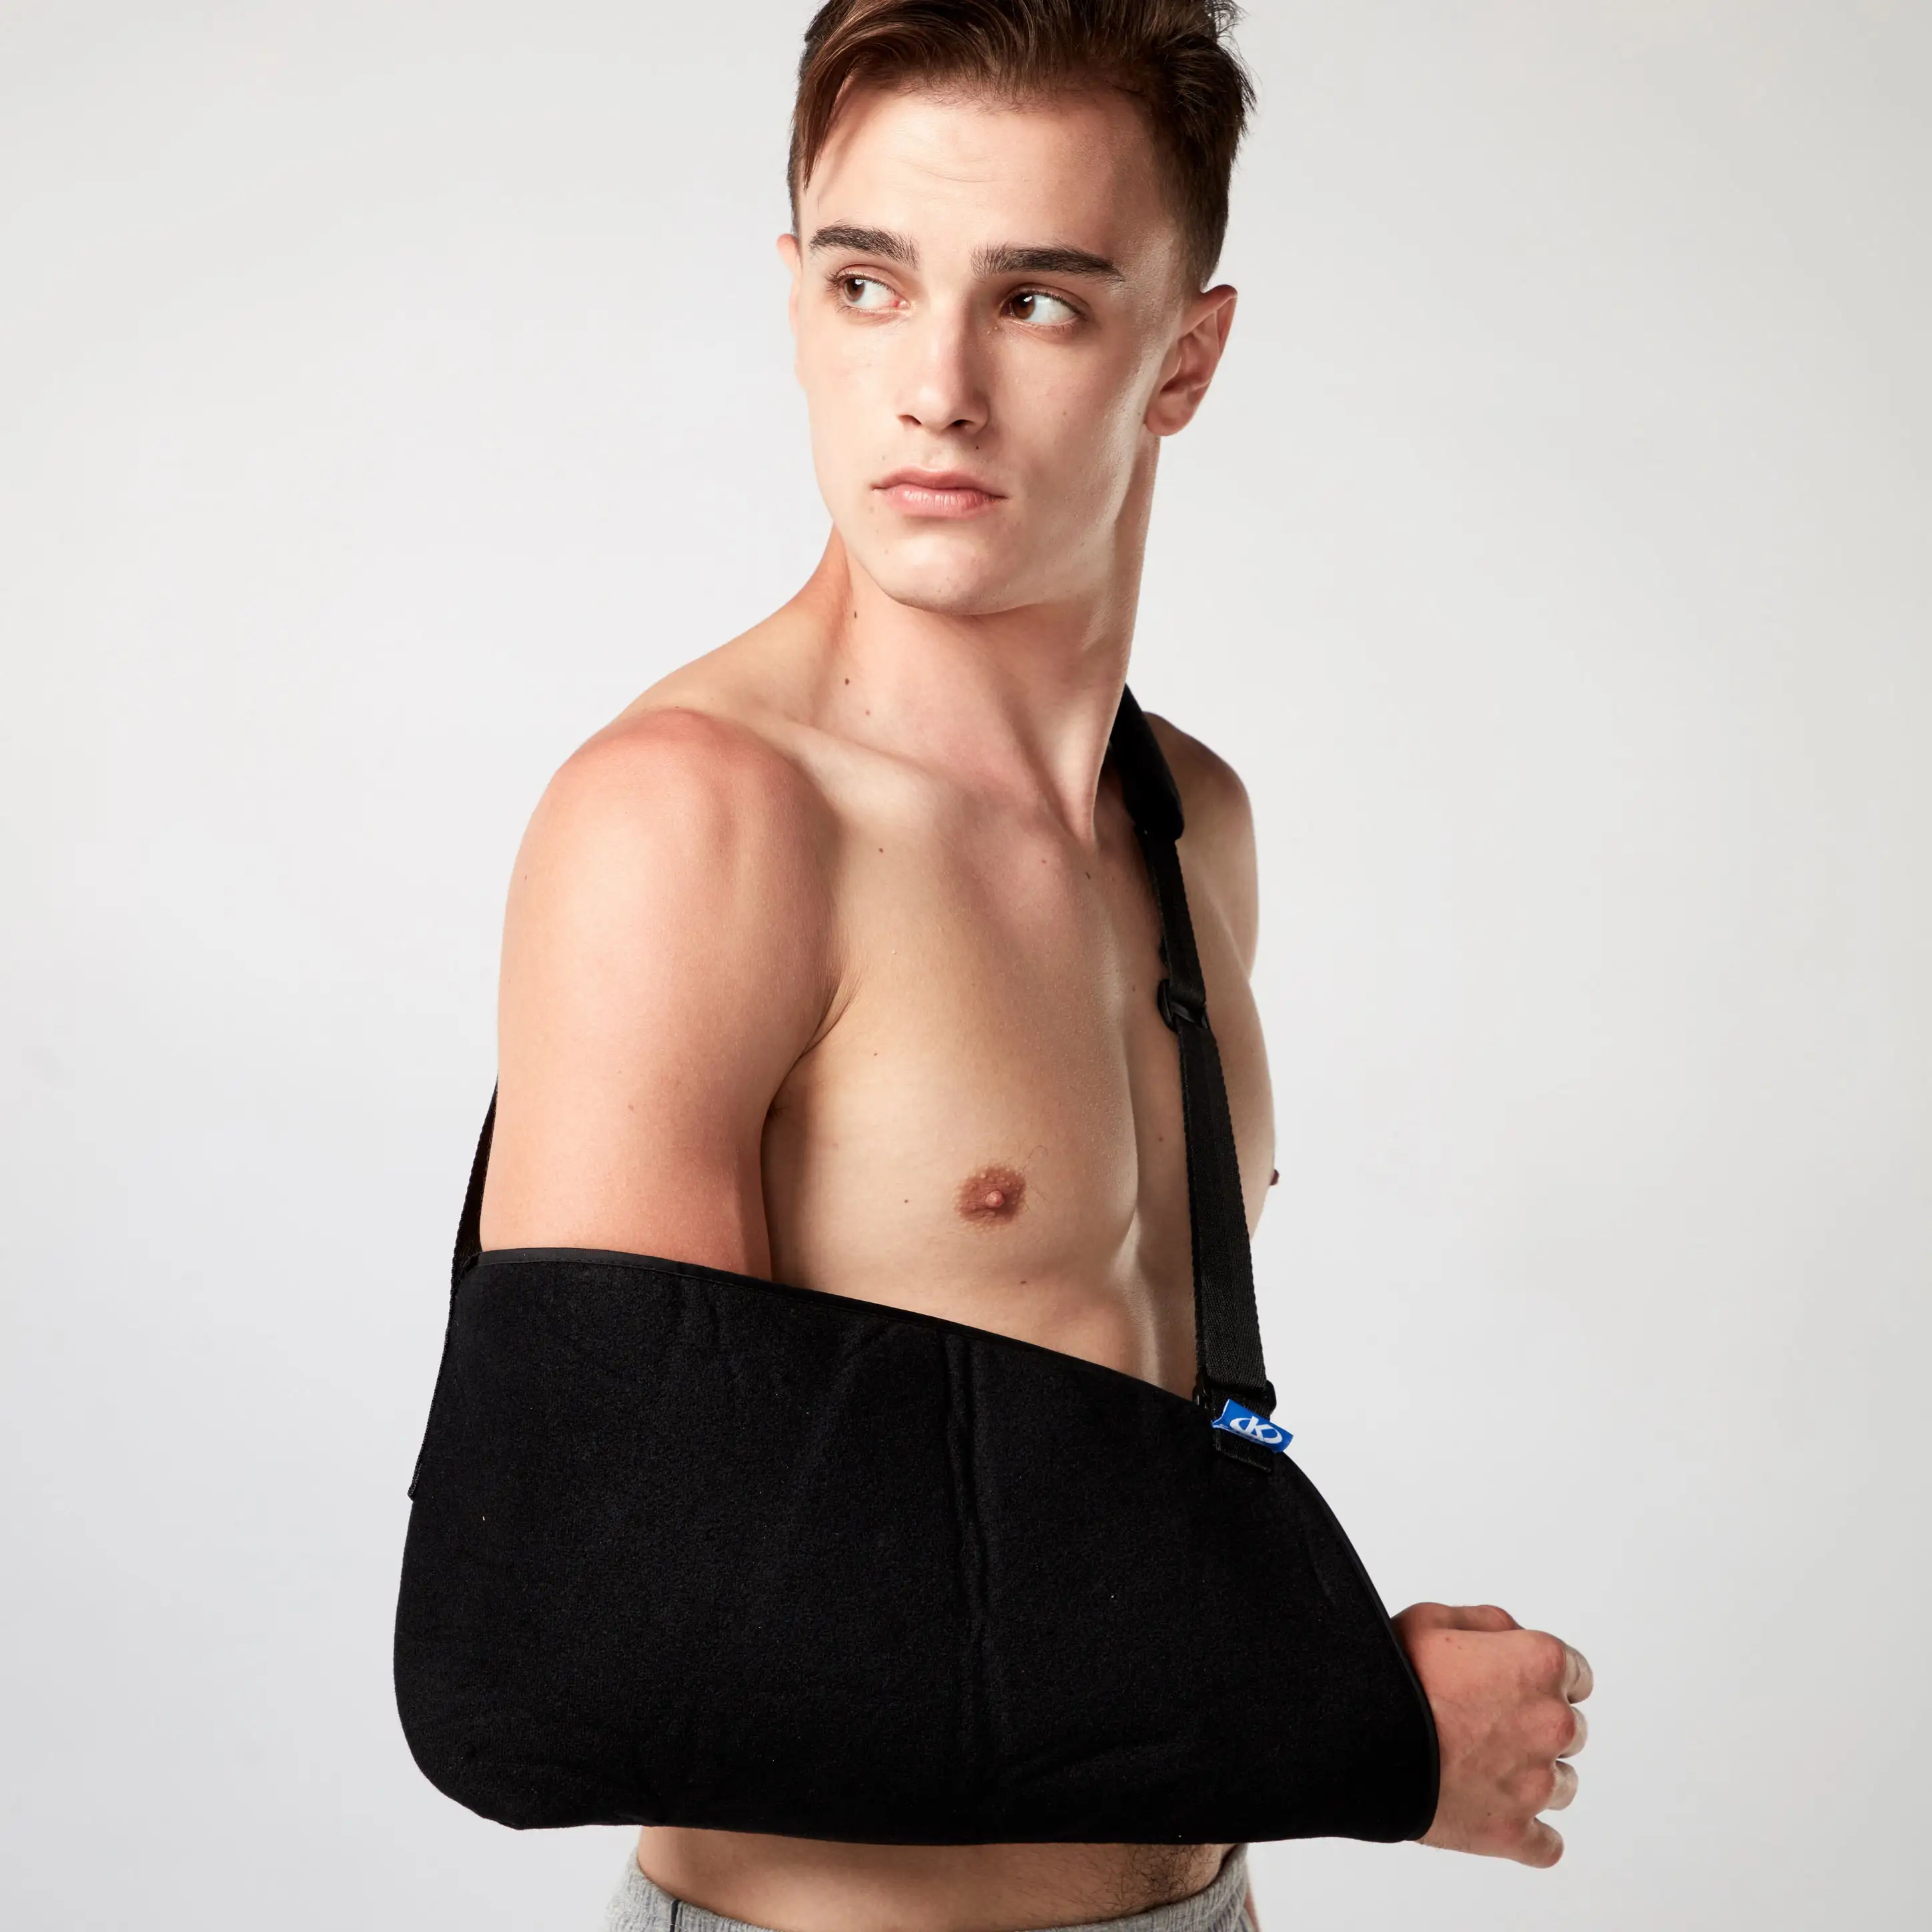 Kol askısı omuz İmimmobilizer ortopedik Rotator manşet desteği Brace rahat tıbbi kol askısı